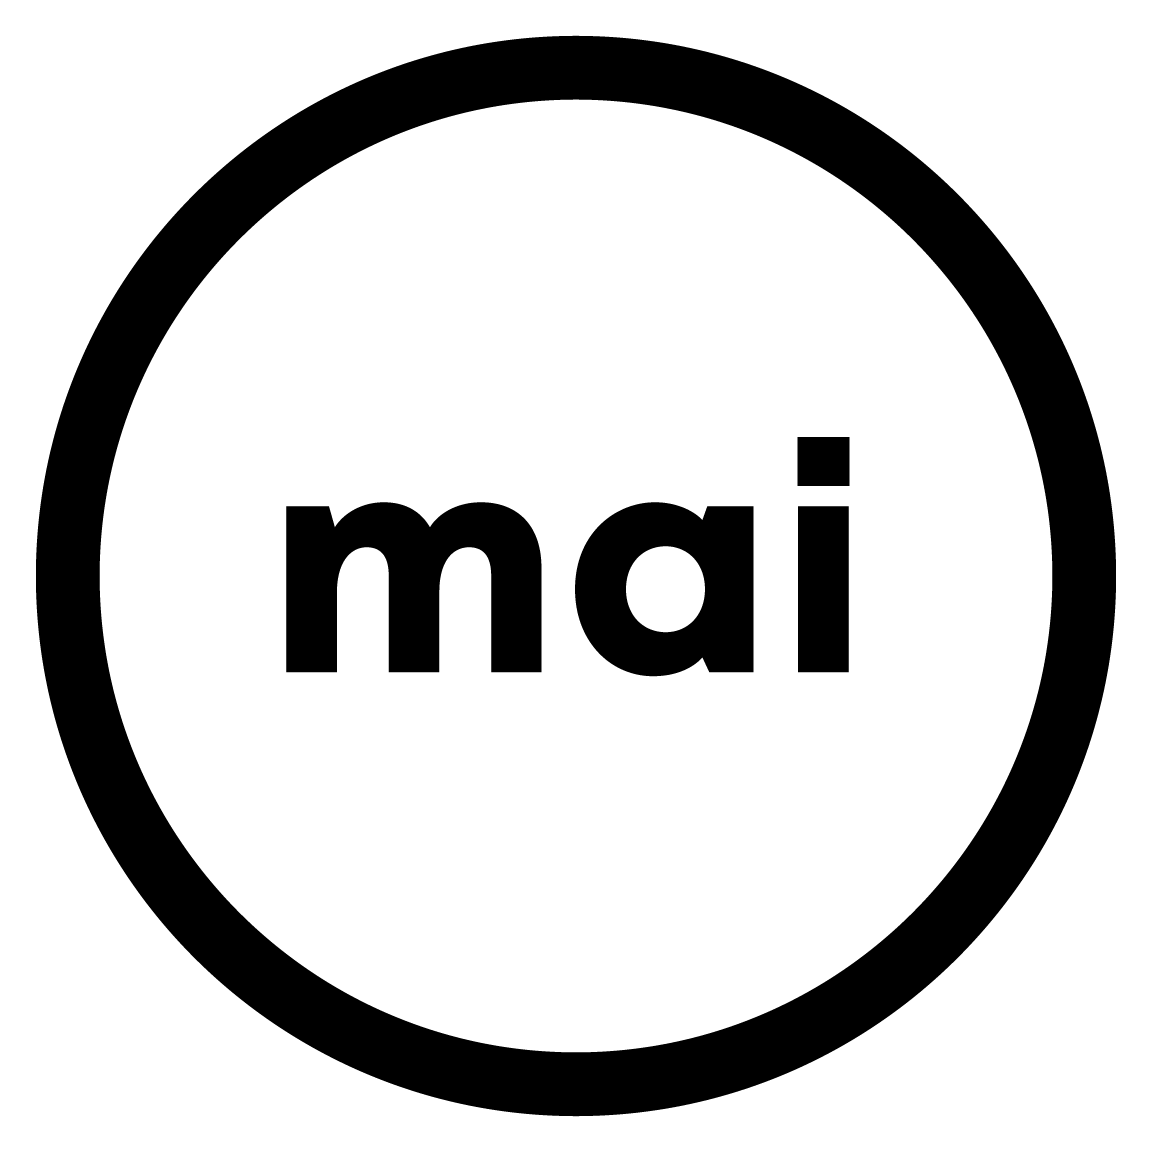 Copie de Logo MAI noir